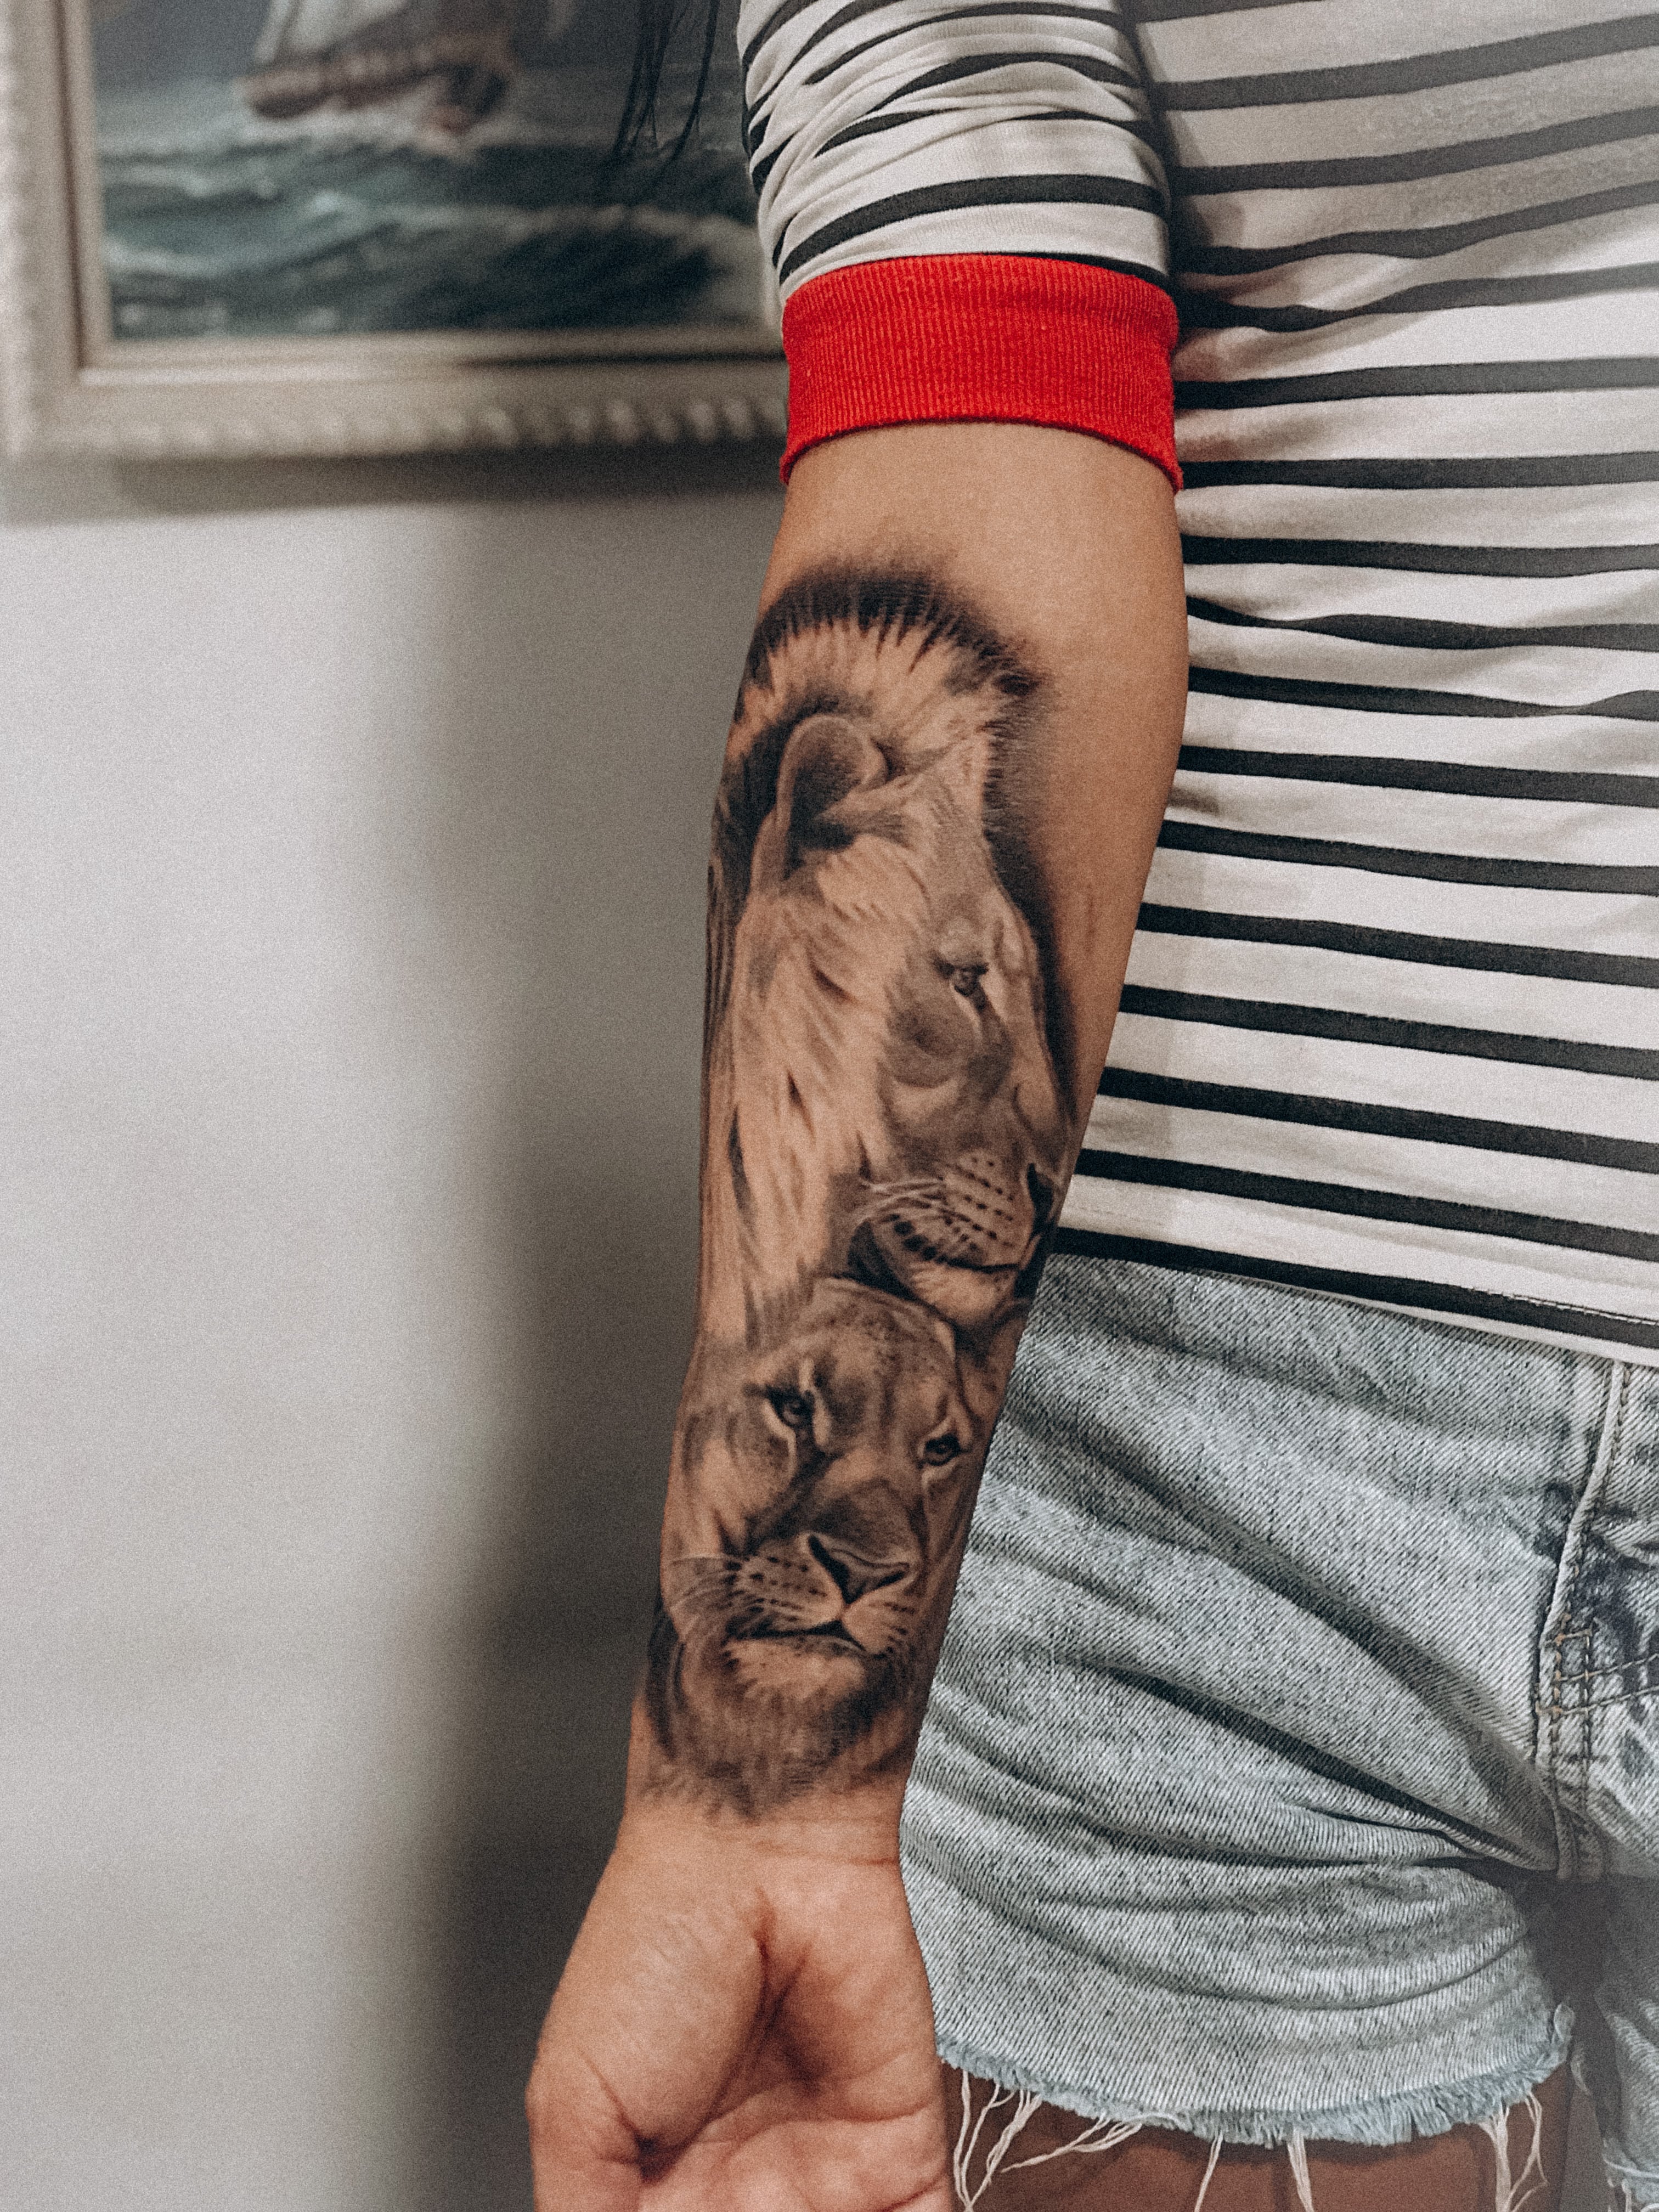 Удаление татуировки пикосекундным лазером в Одессе